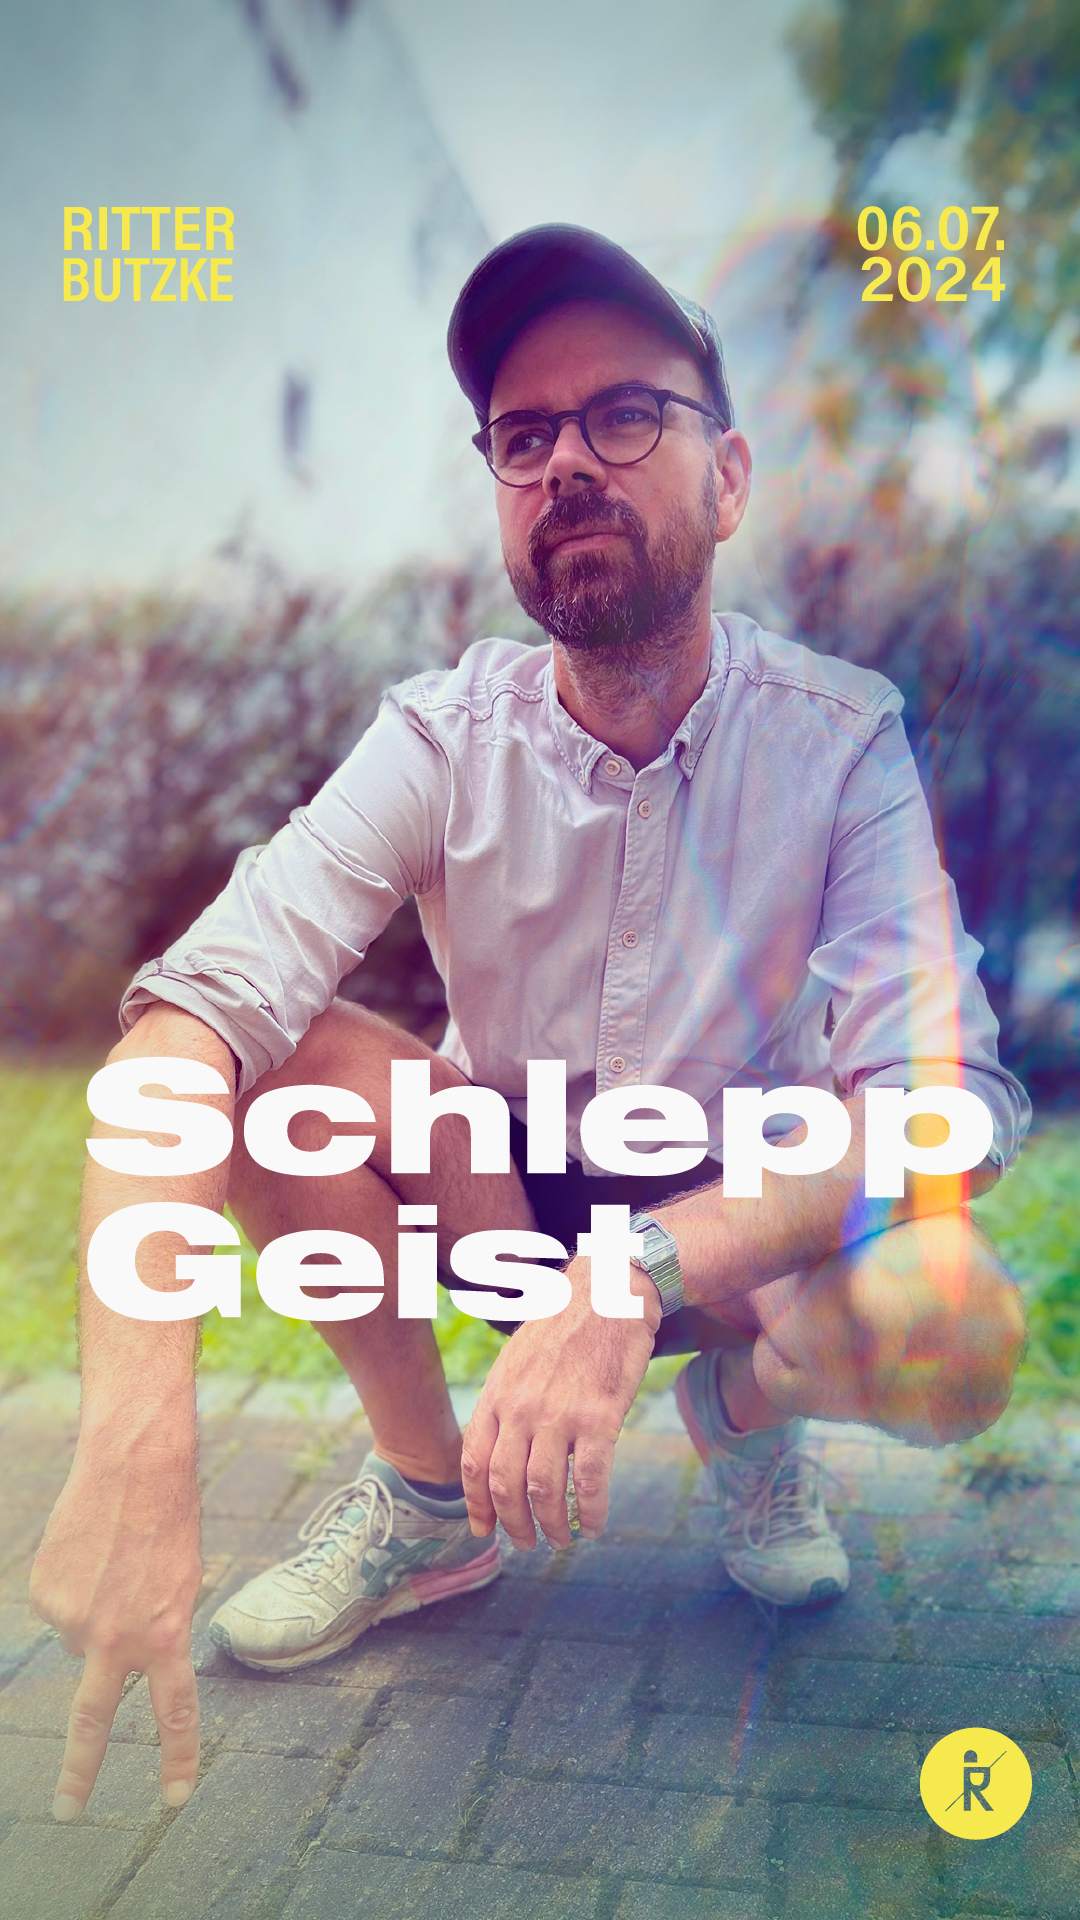 Schlepp Geist - フライヤー裏